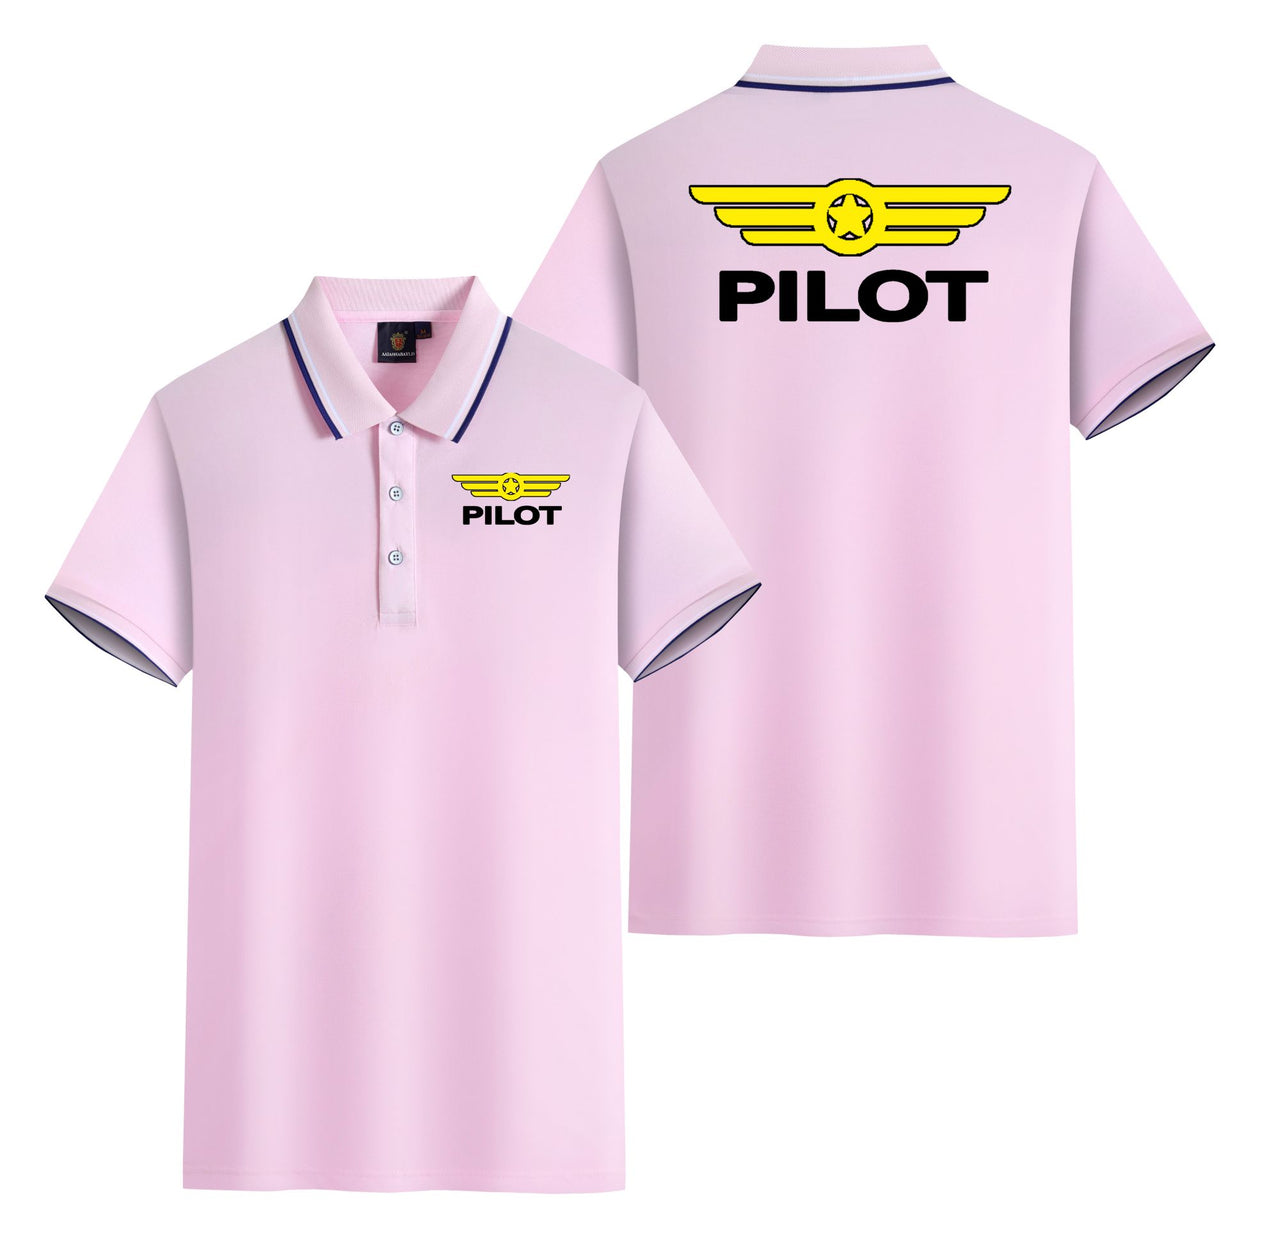 Pilot & Badge Designed Stylish Polo T-Shirts (Double-Side)